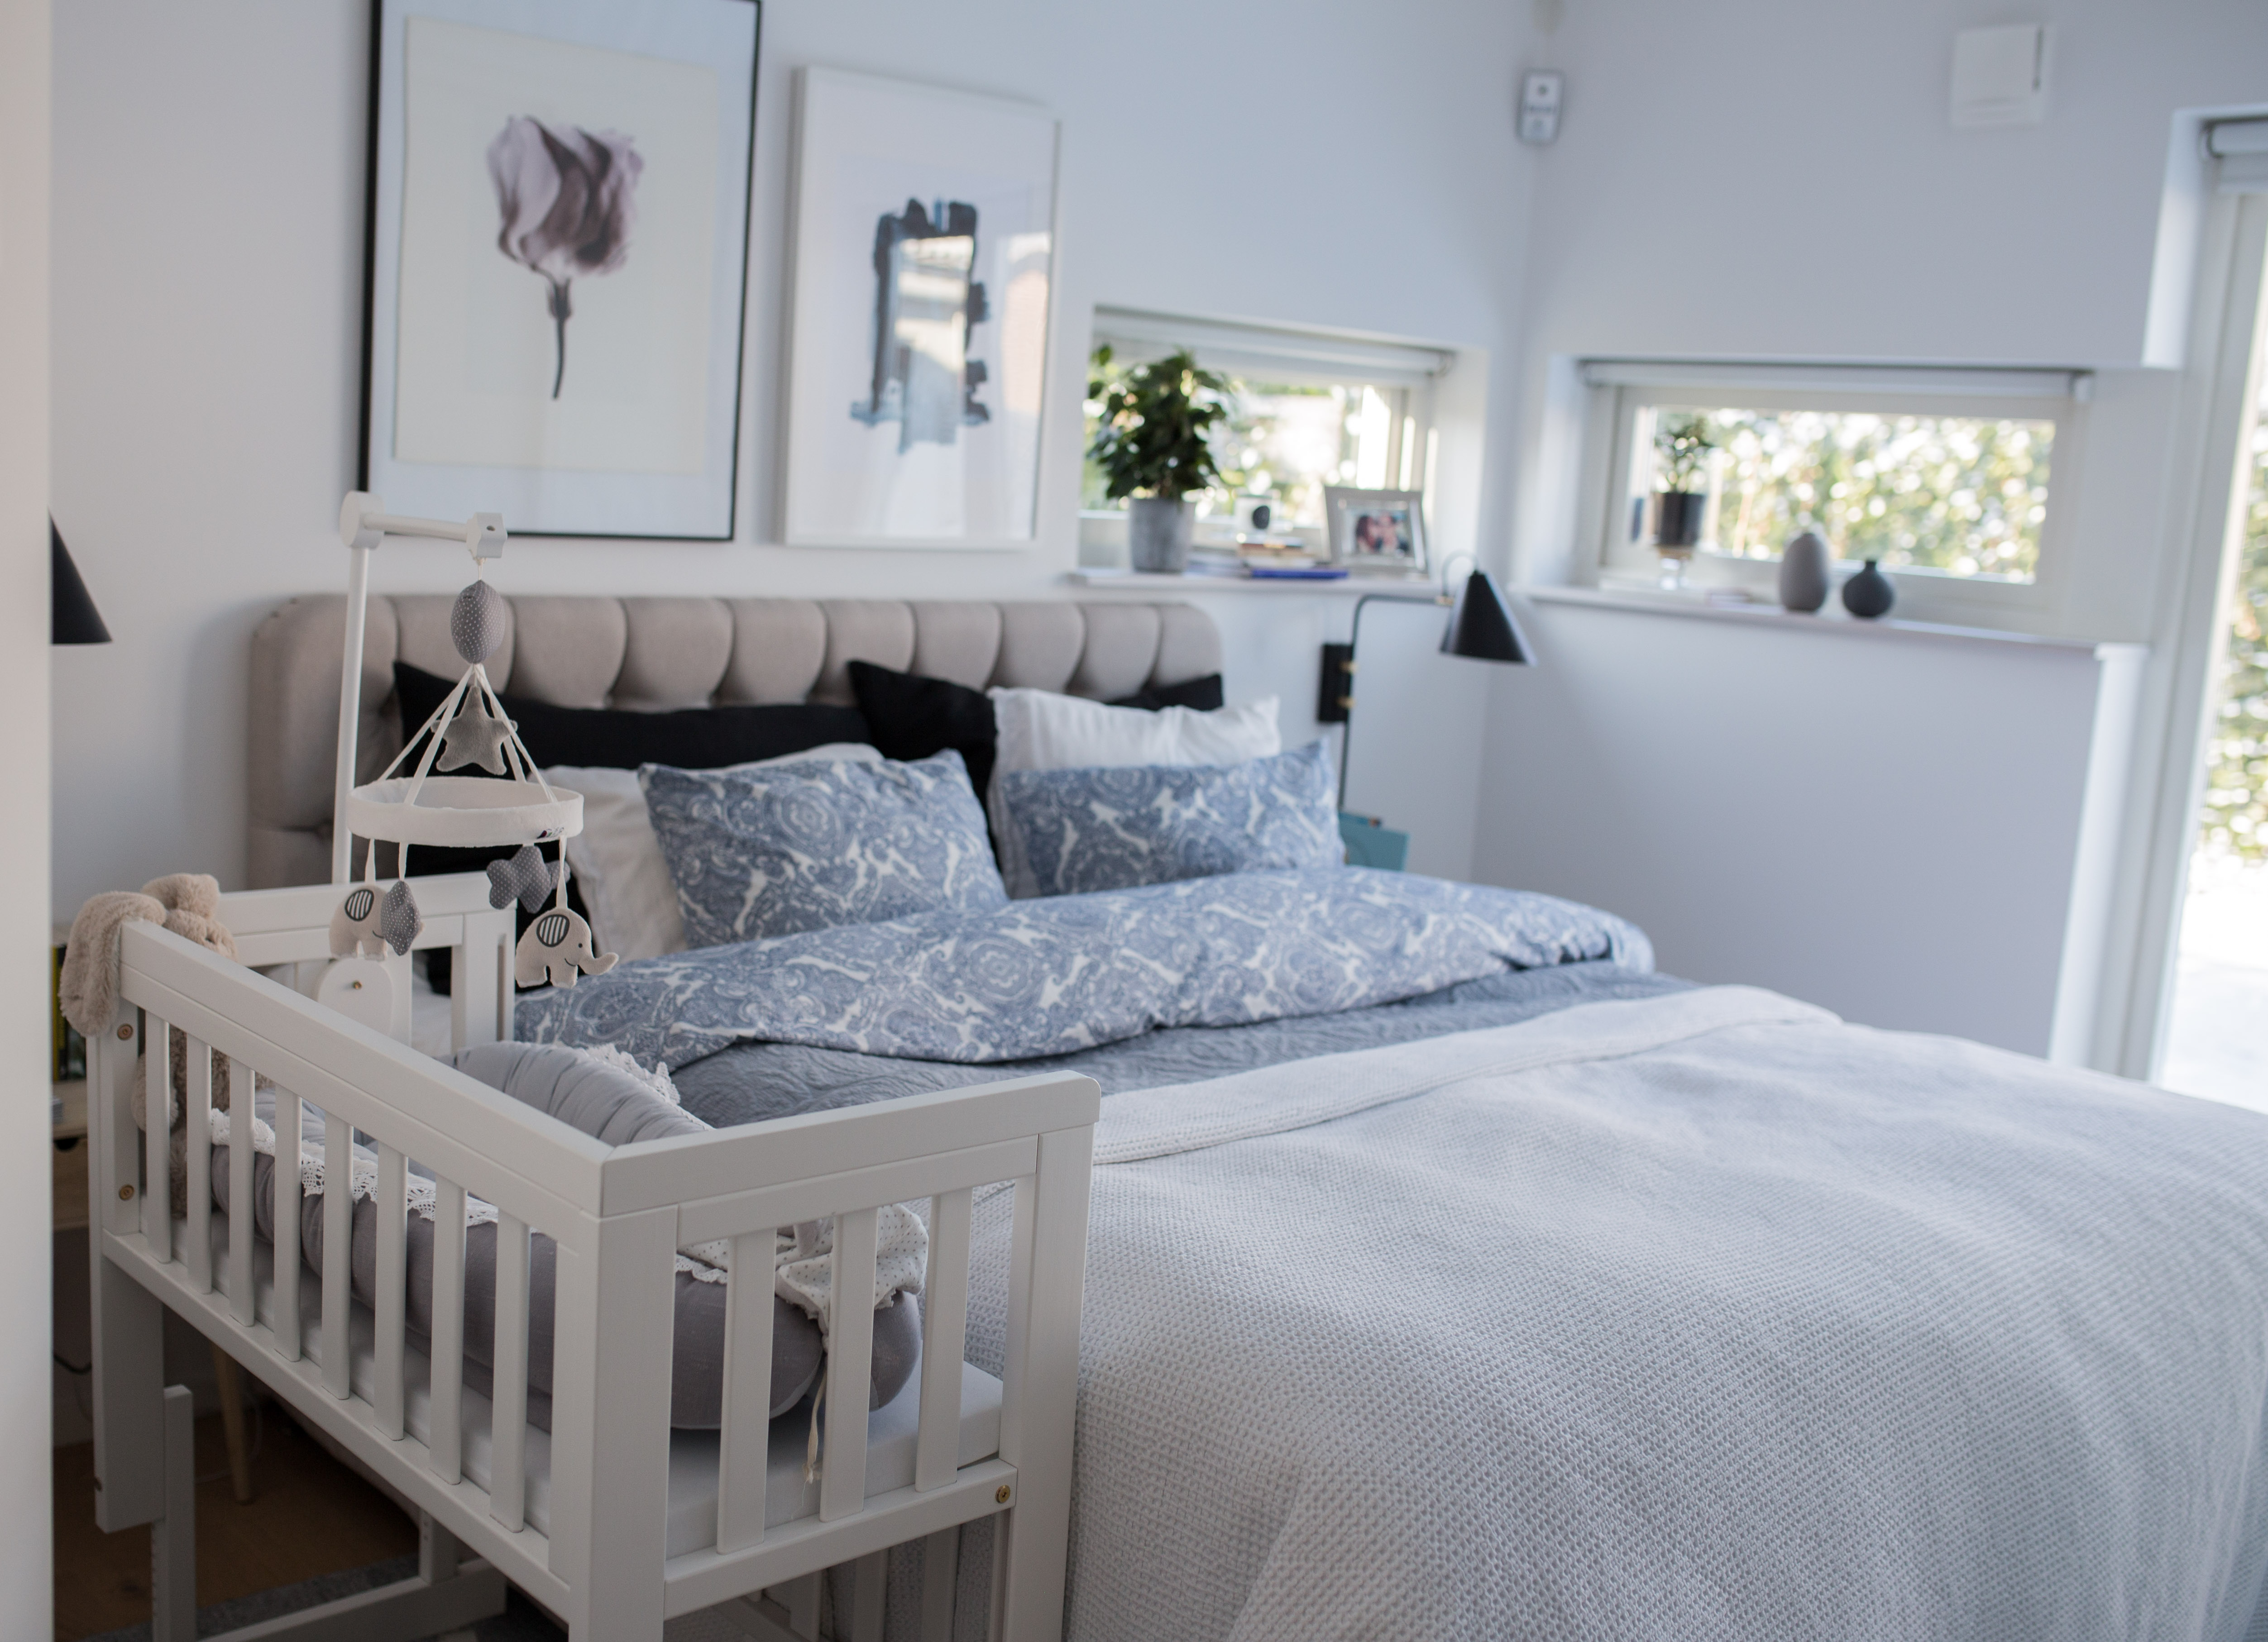 Bedside Crib – en sidosäng att ha bredvid vuxensängen de första månaderna